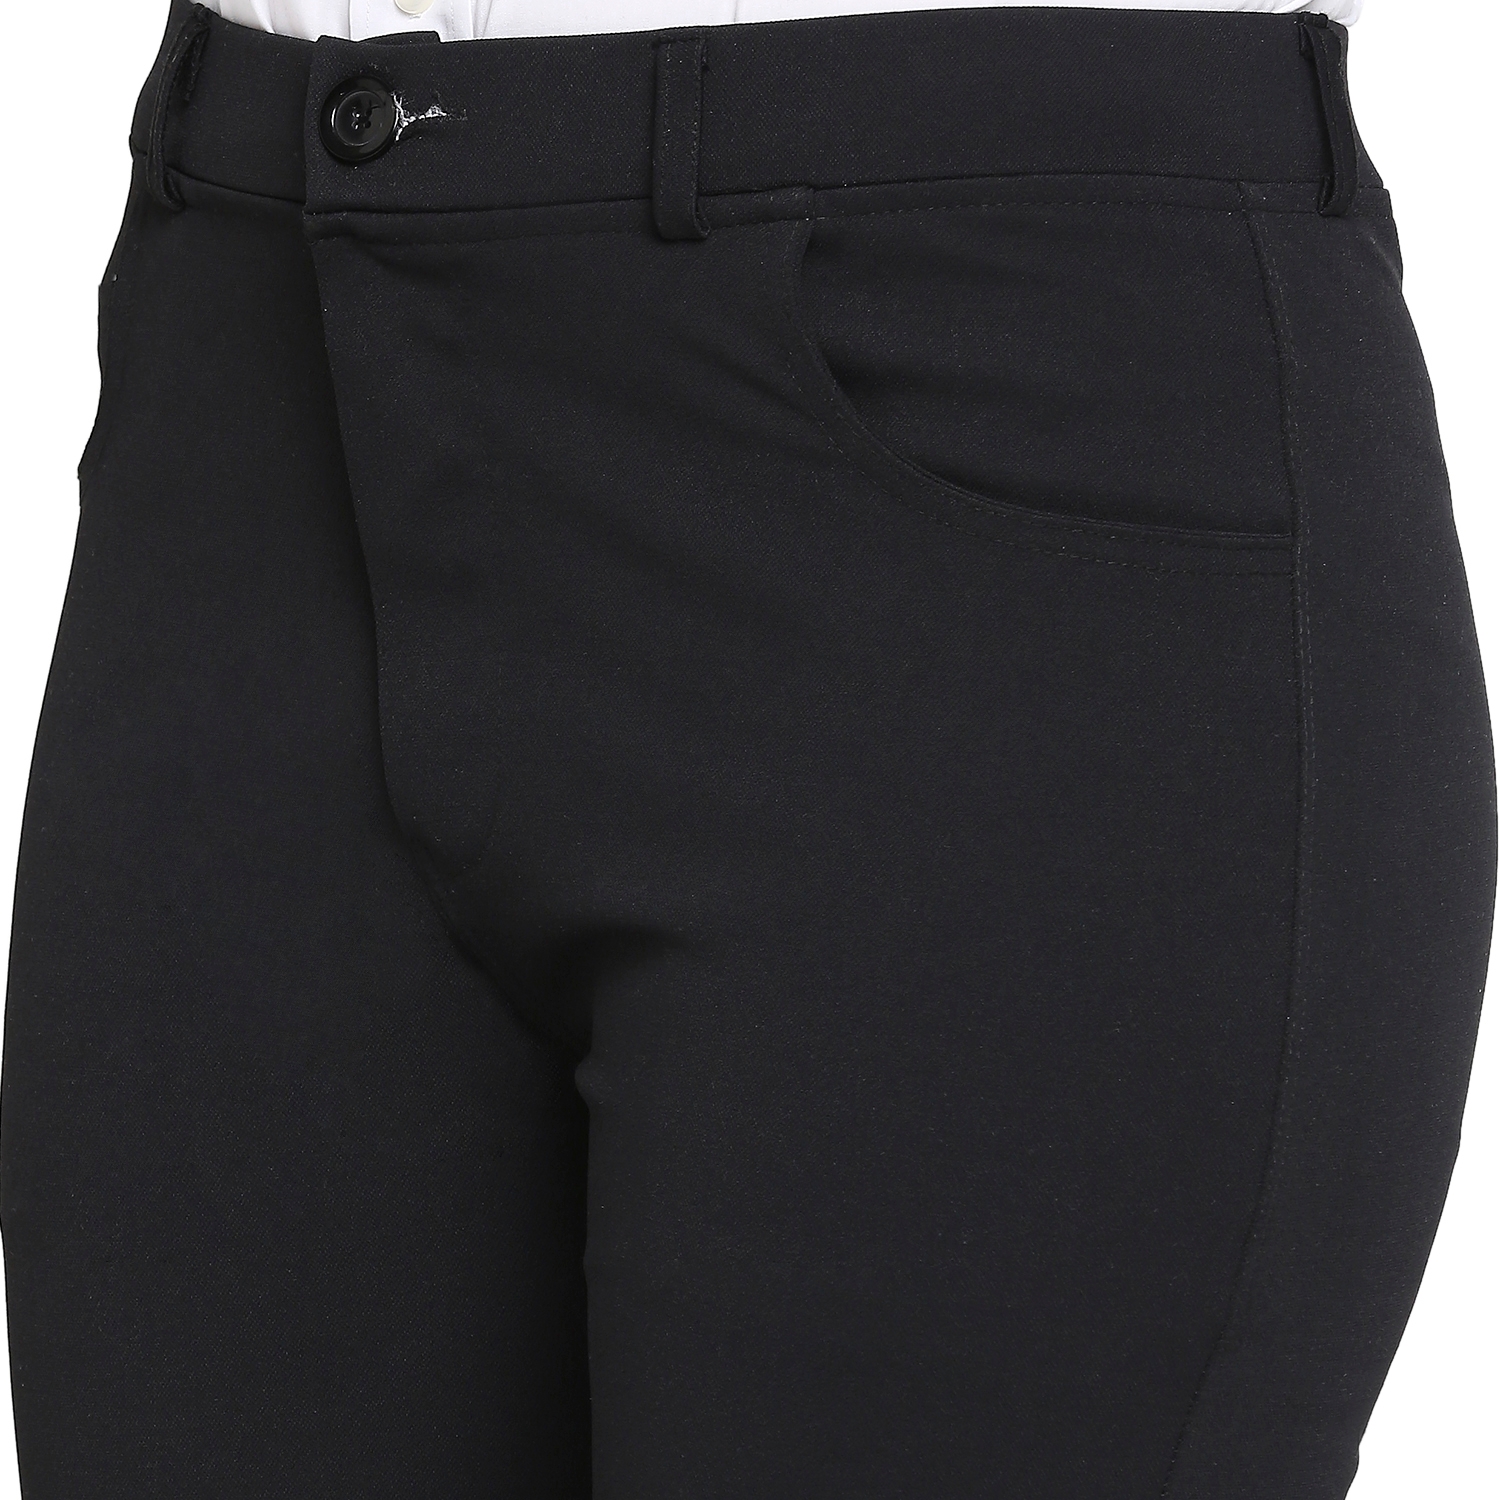 Siena Khaki Self-Patterned Pants – Men's Priorities